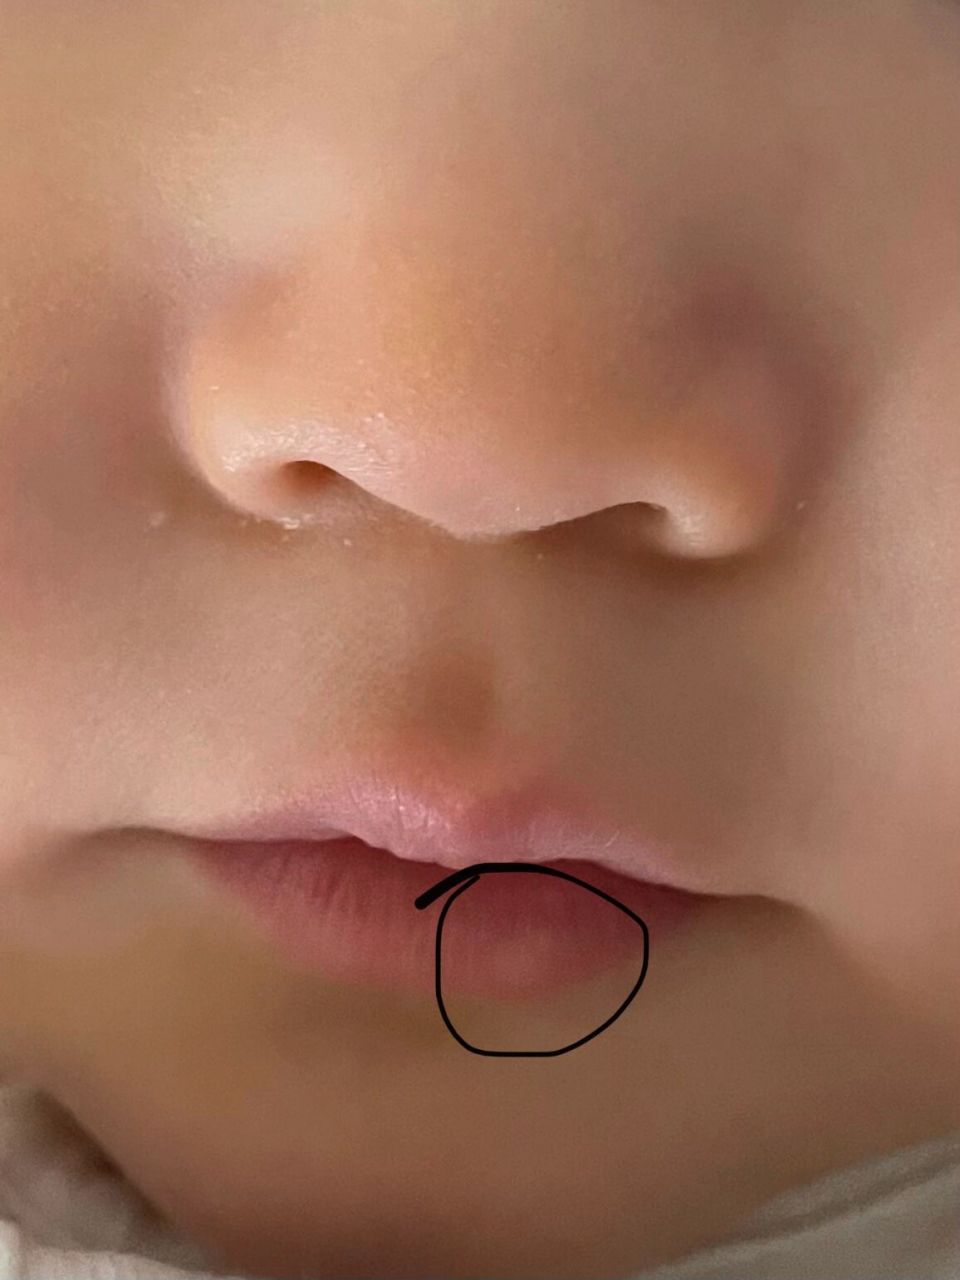 婴儿嘴唇上一块白色圆圆的 万能的有人知道怎么回事吗?